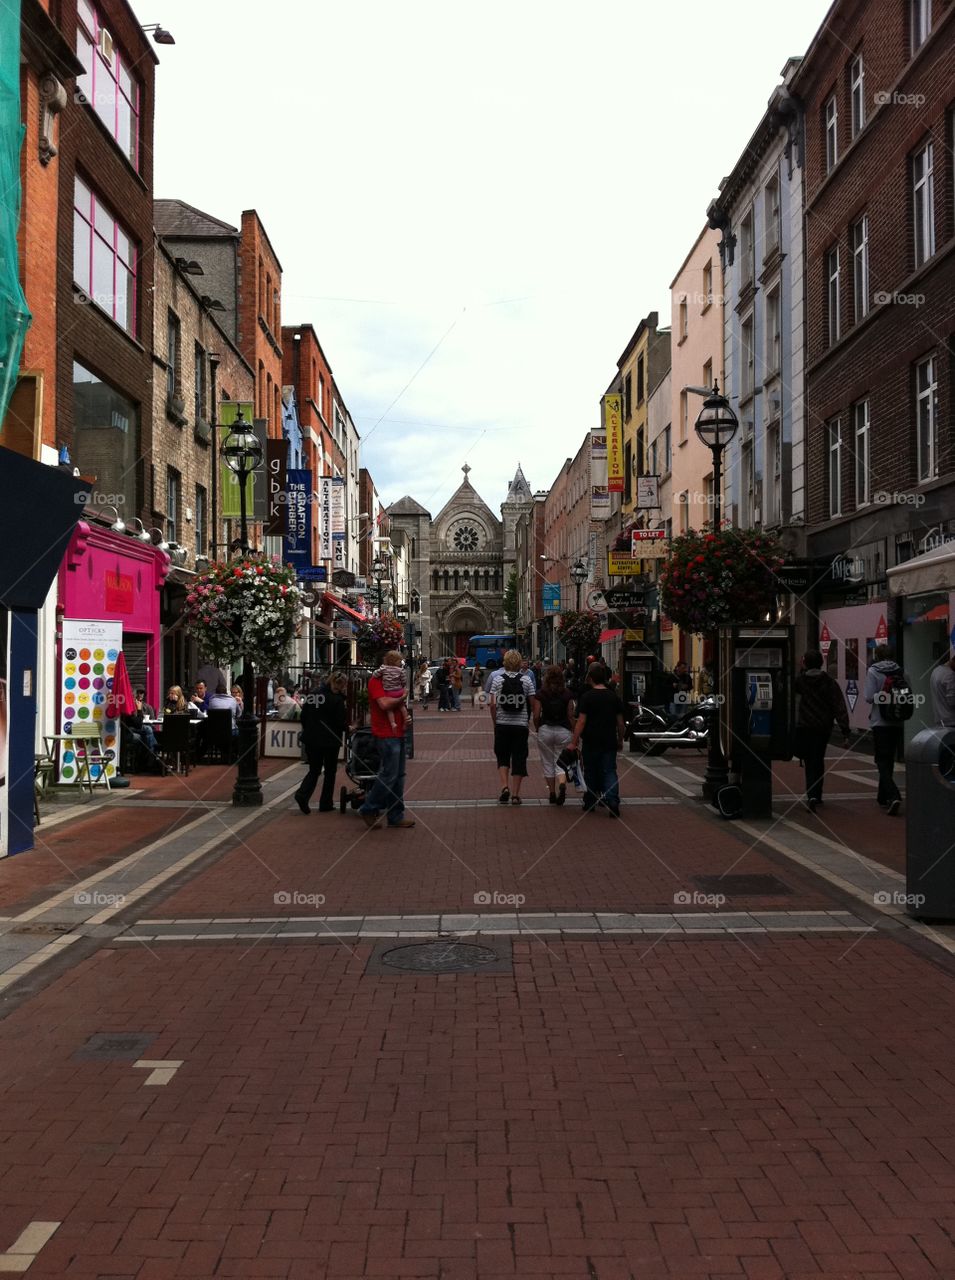 Dublin back street